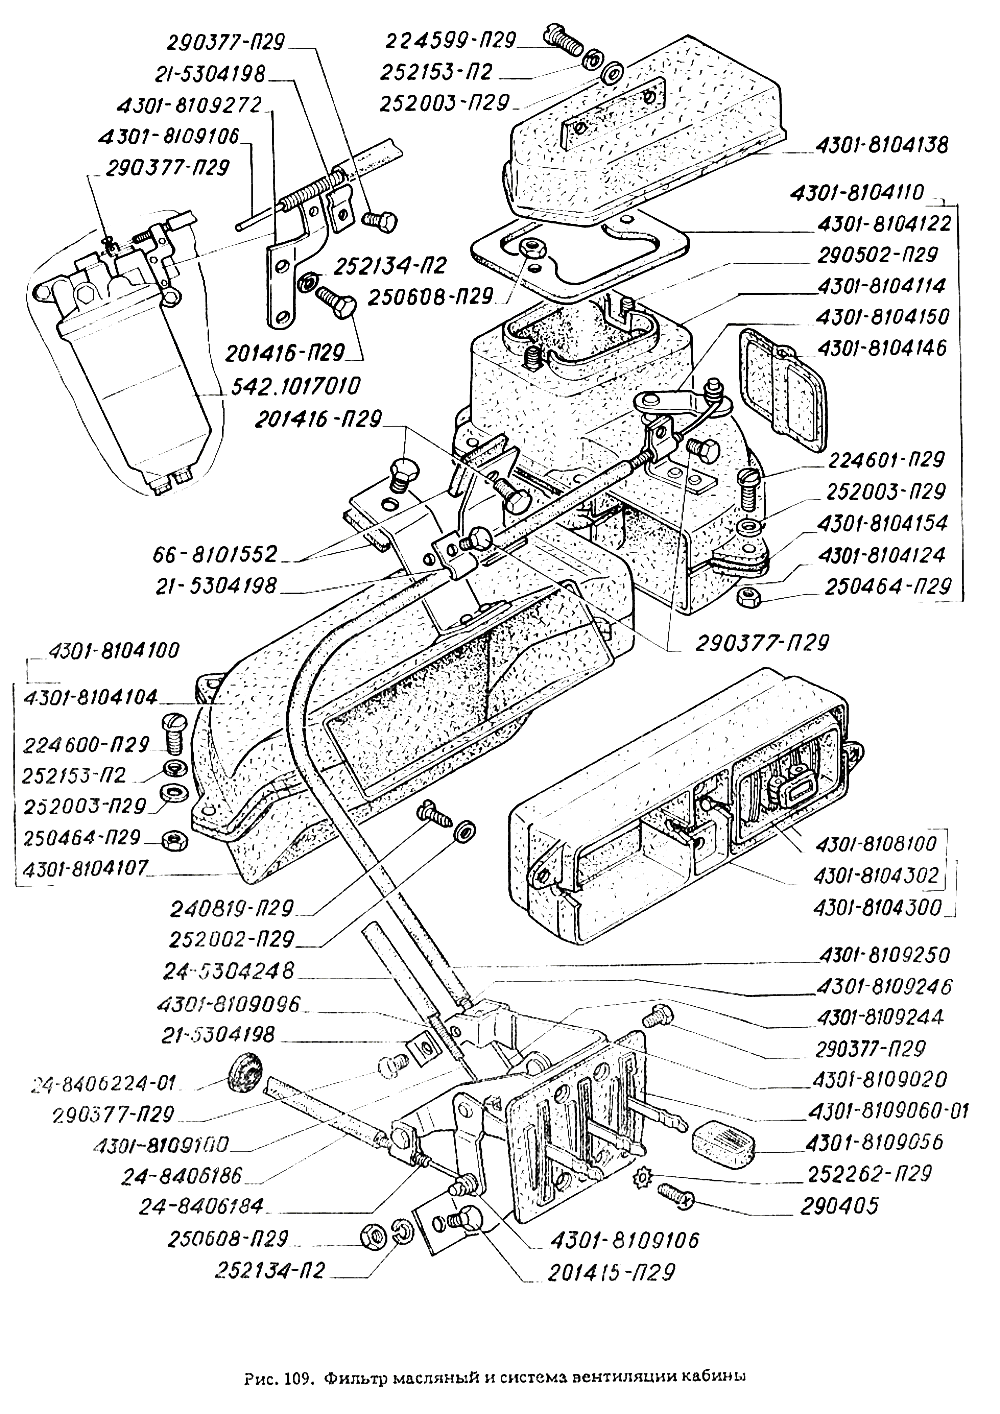 Фильтр масляный и система вентиляции кабины